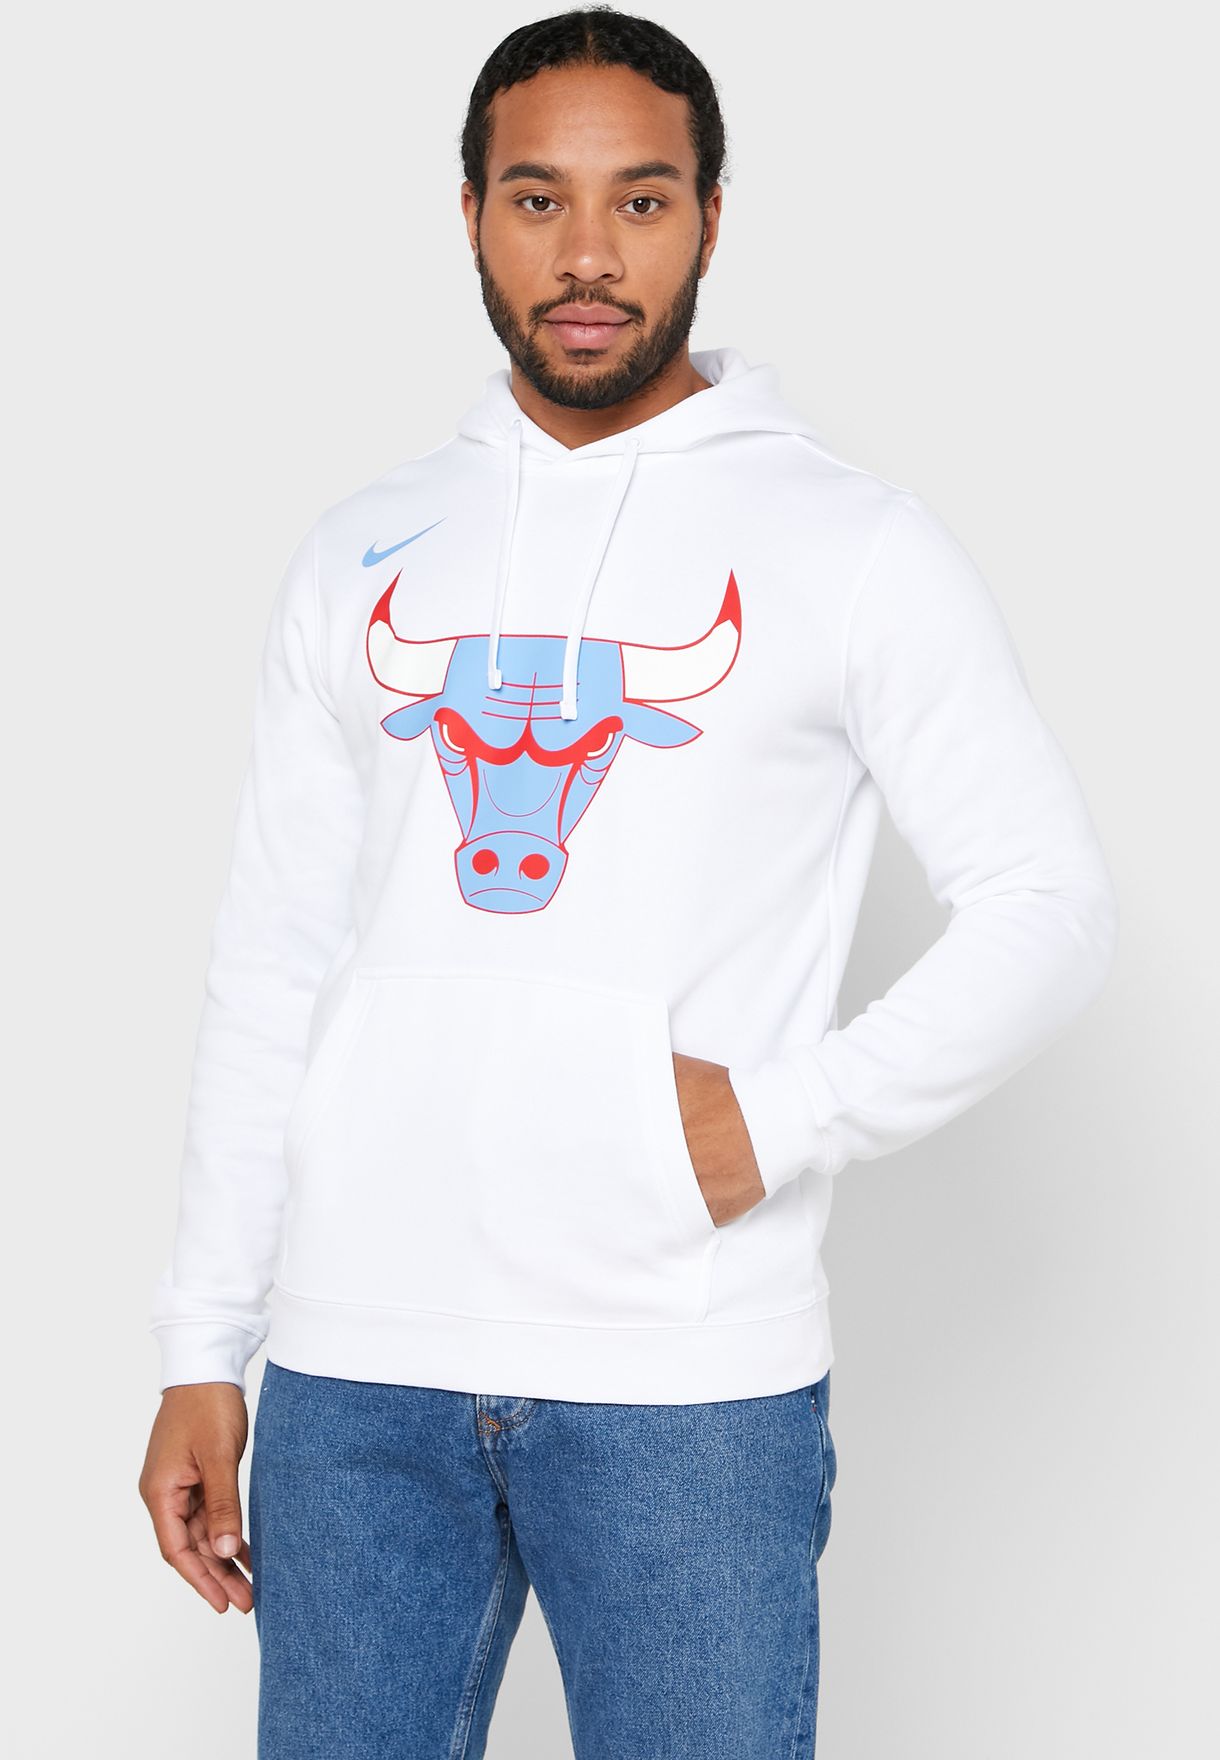 nike bulls hoodie